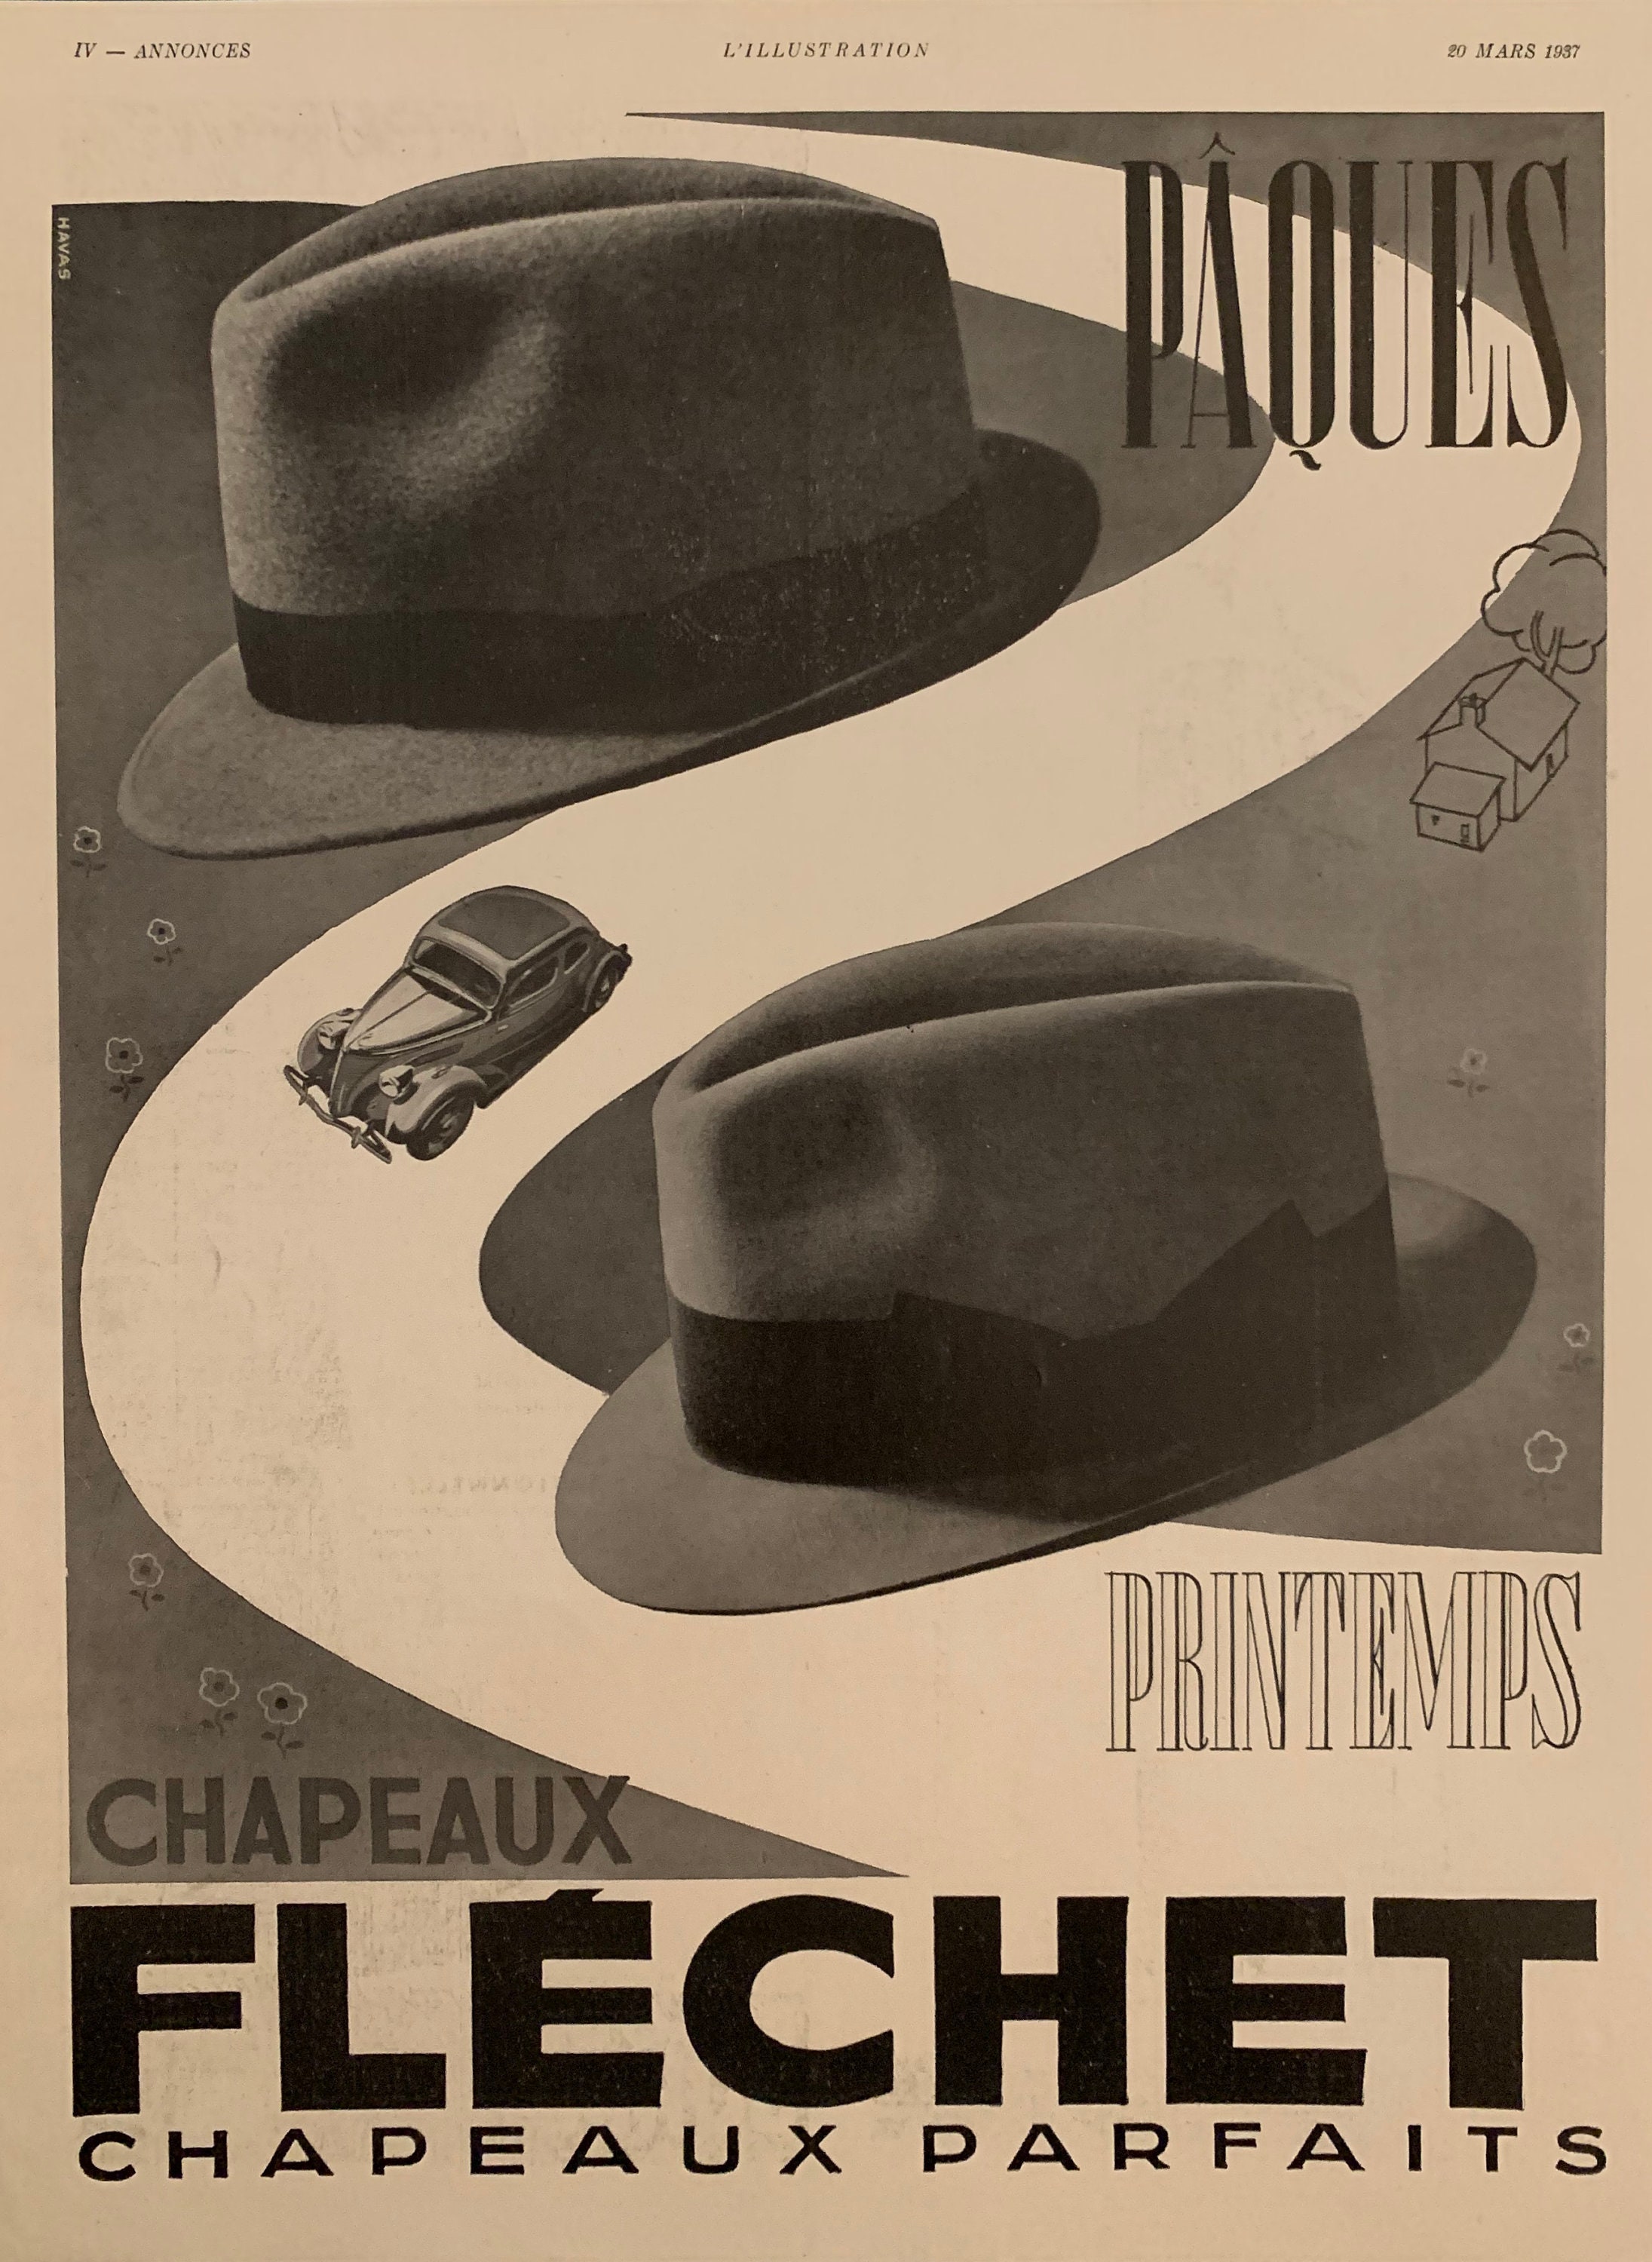 Vintage Magazine Ad Flechet Chapeaux Parfaits Hats - Etsy